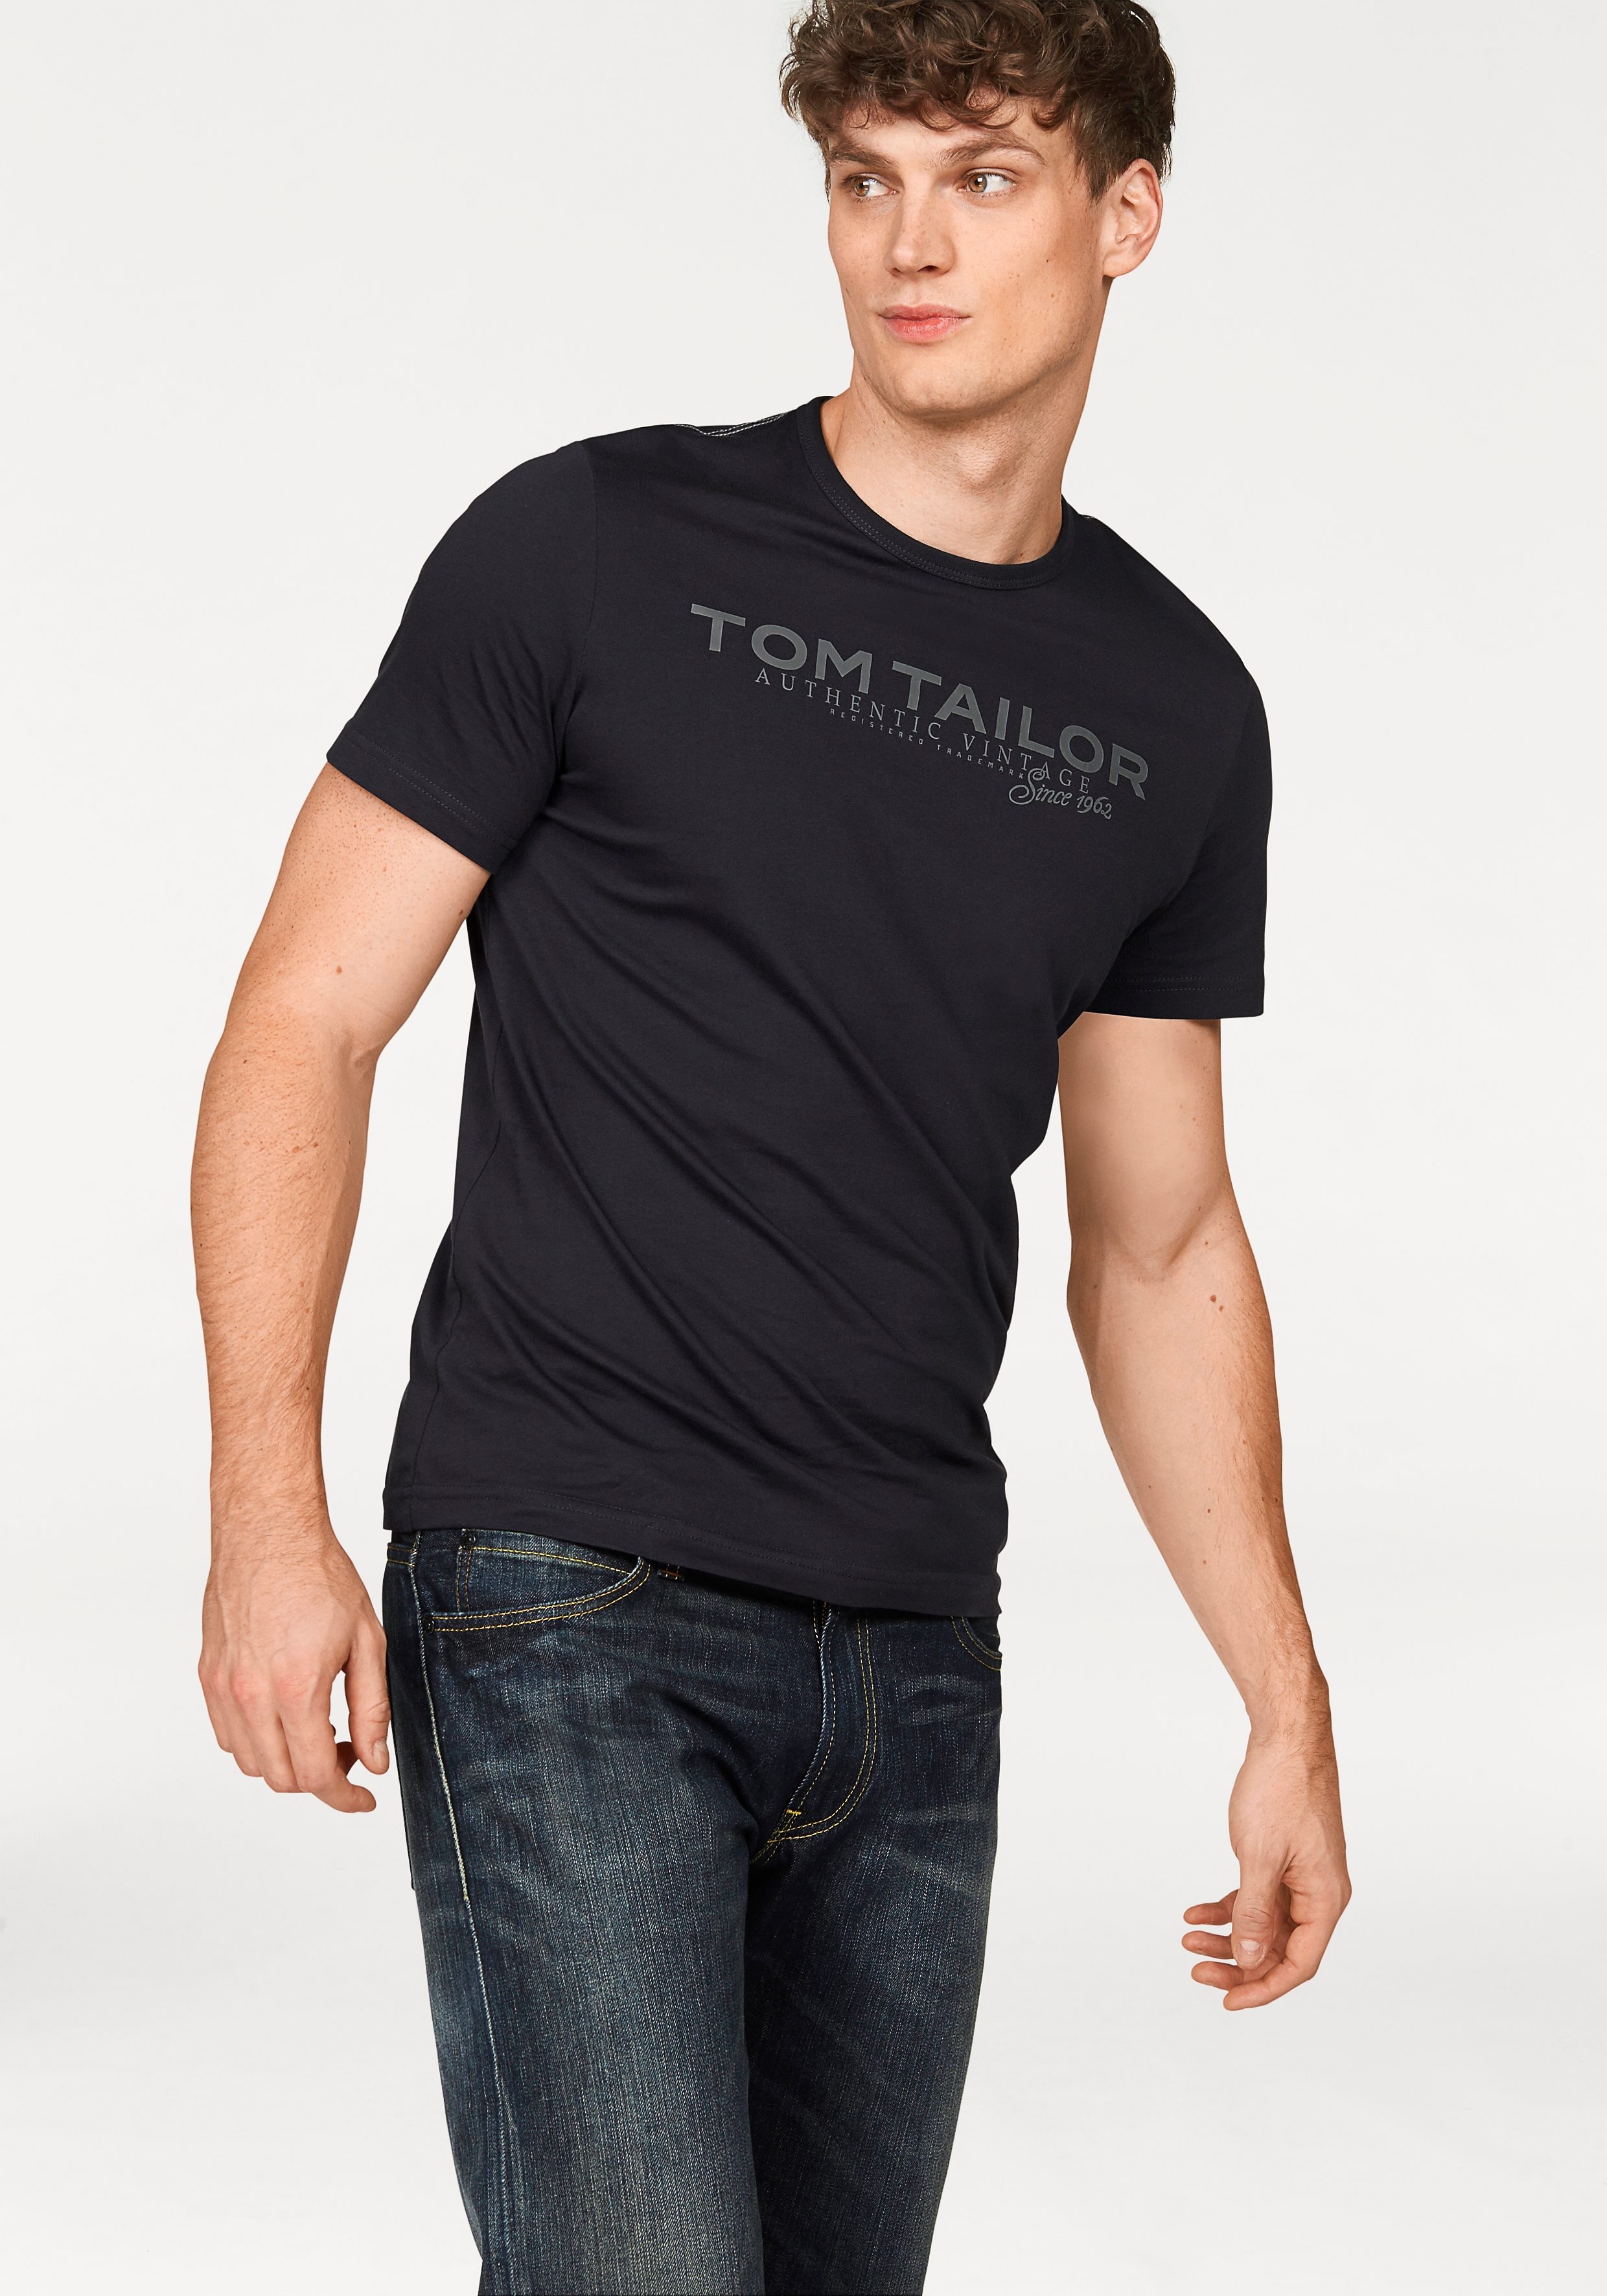 TOM TAILOR T-Shirt mit Logoprint online kaufen | OTTO